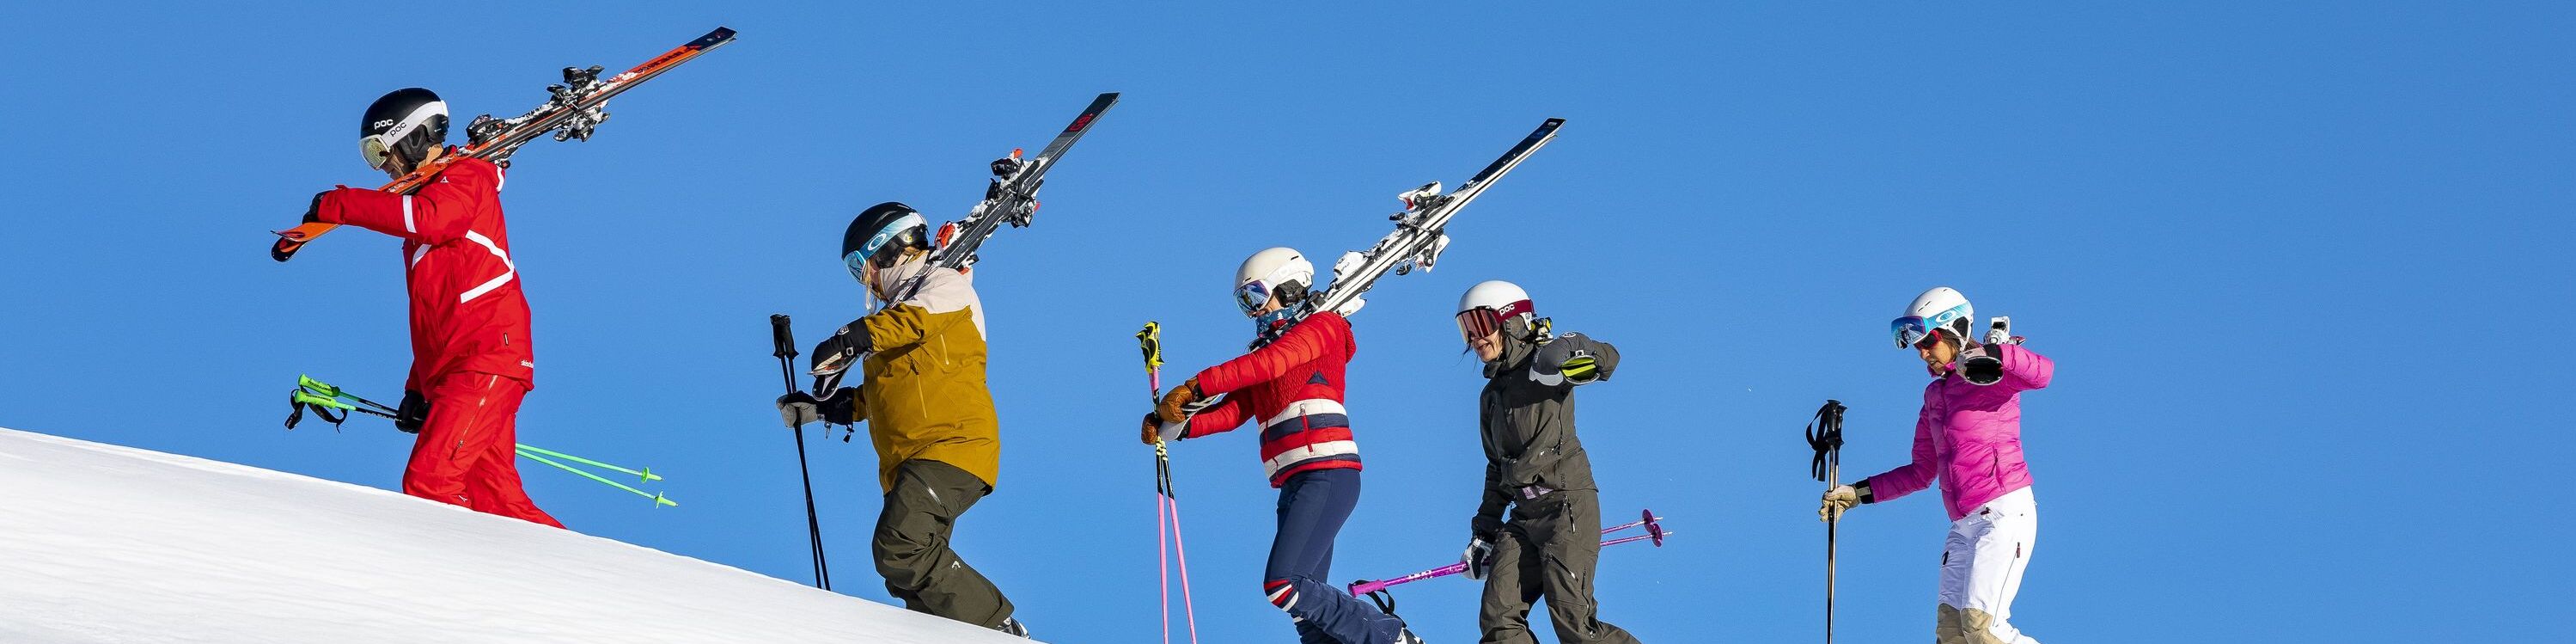 Gruppenskikurs Skischule Hirschegg schultert Skier auf der Piste 